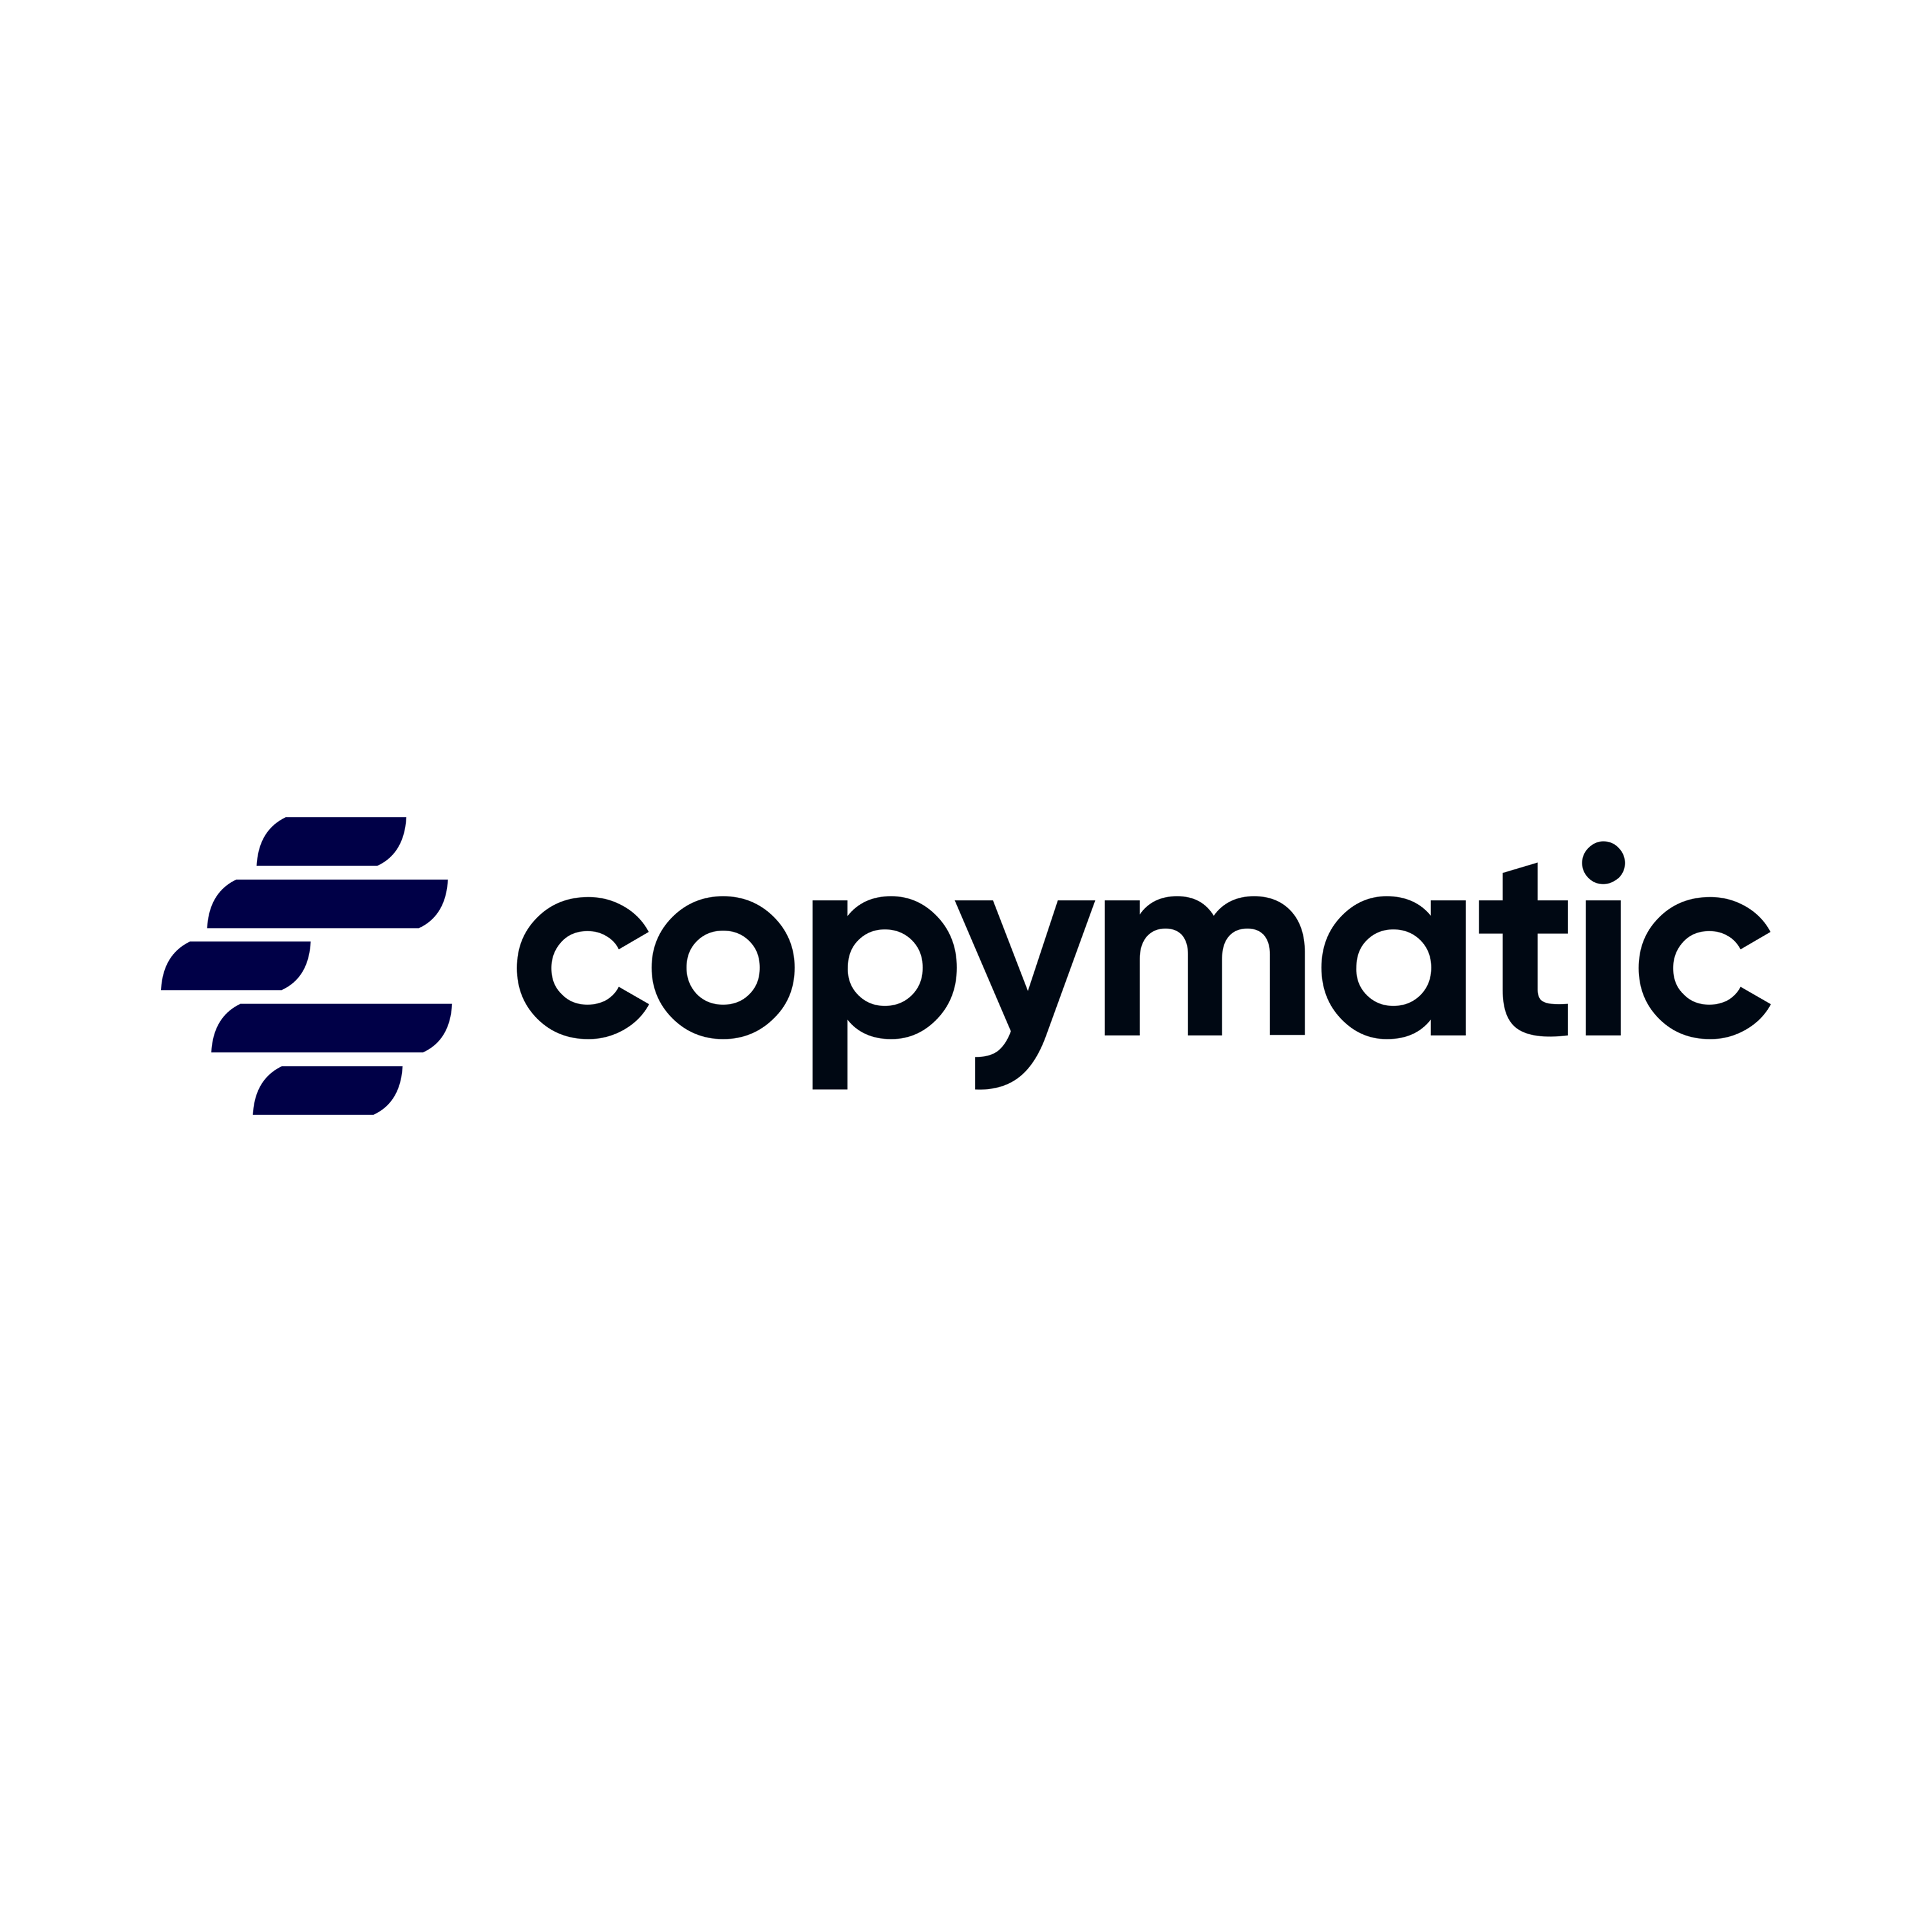 Copymatic Logo Transparent Picture